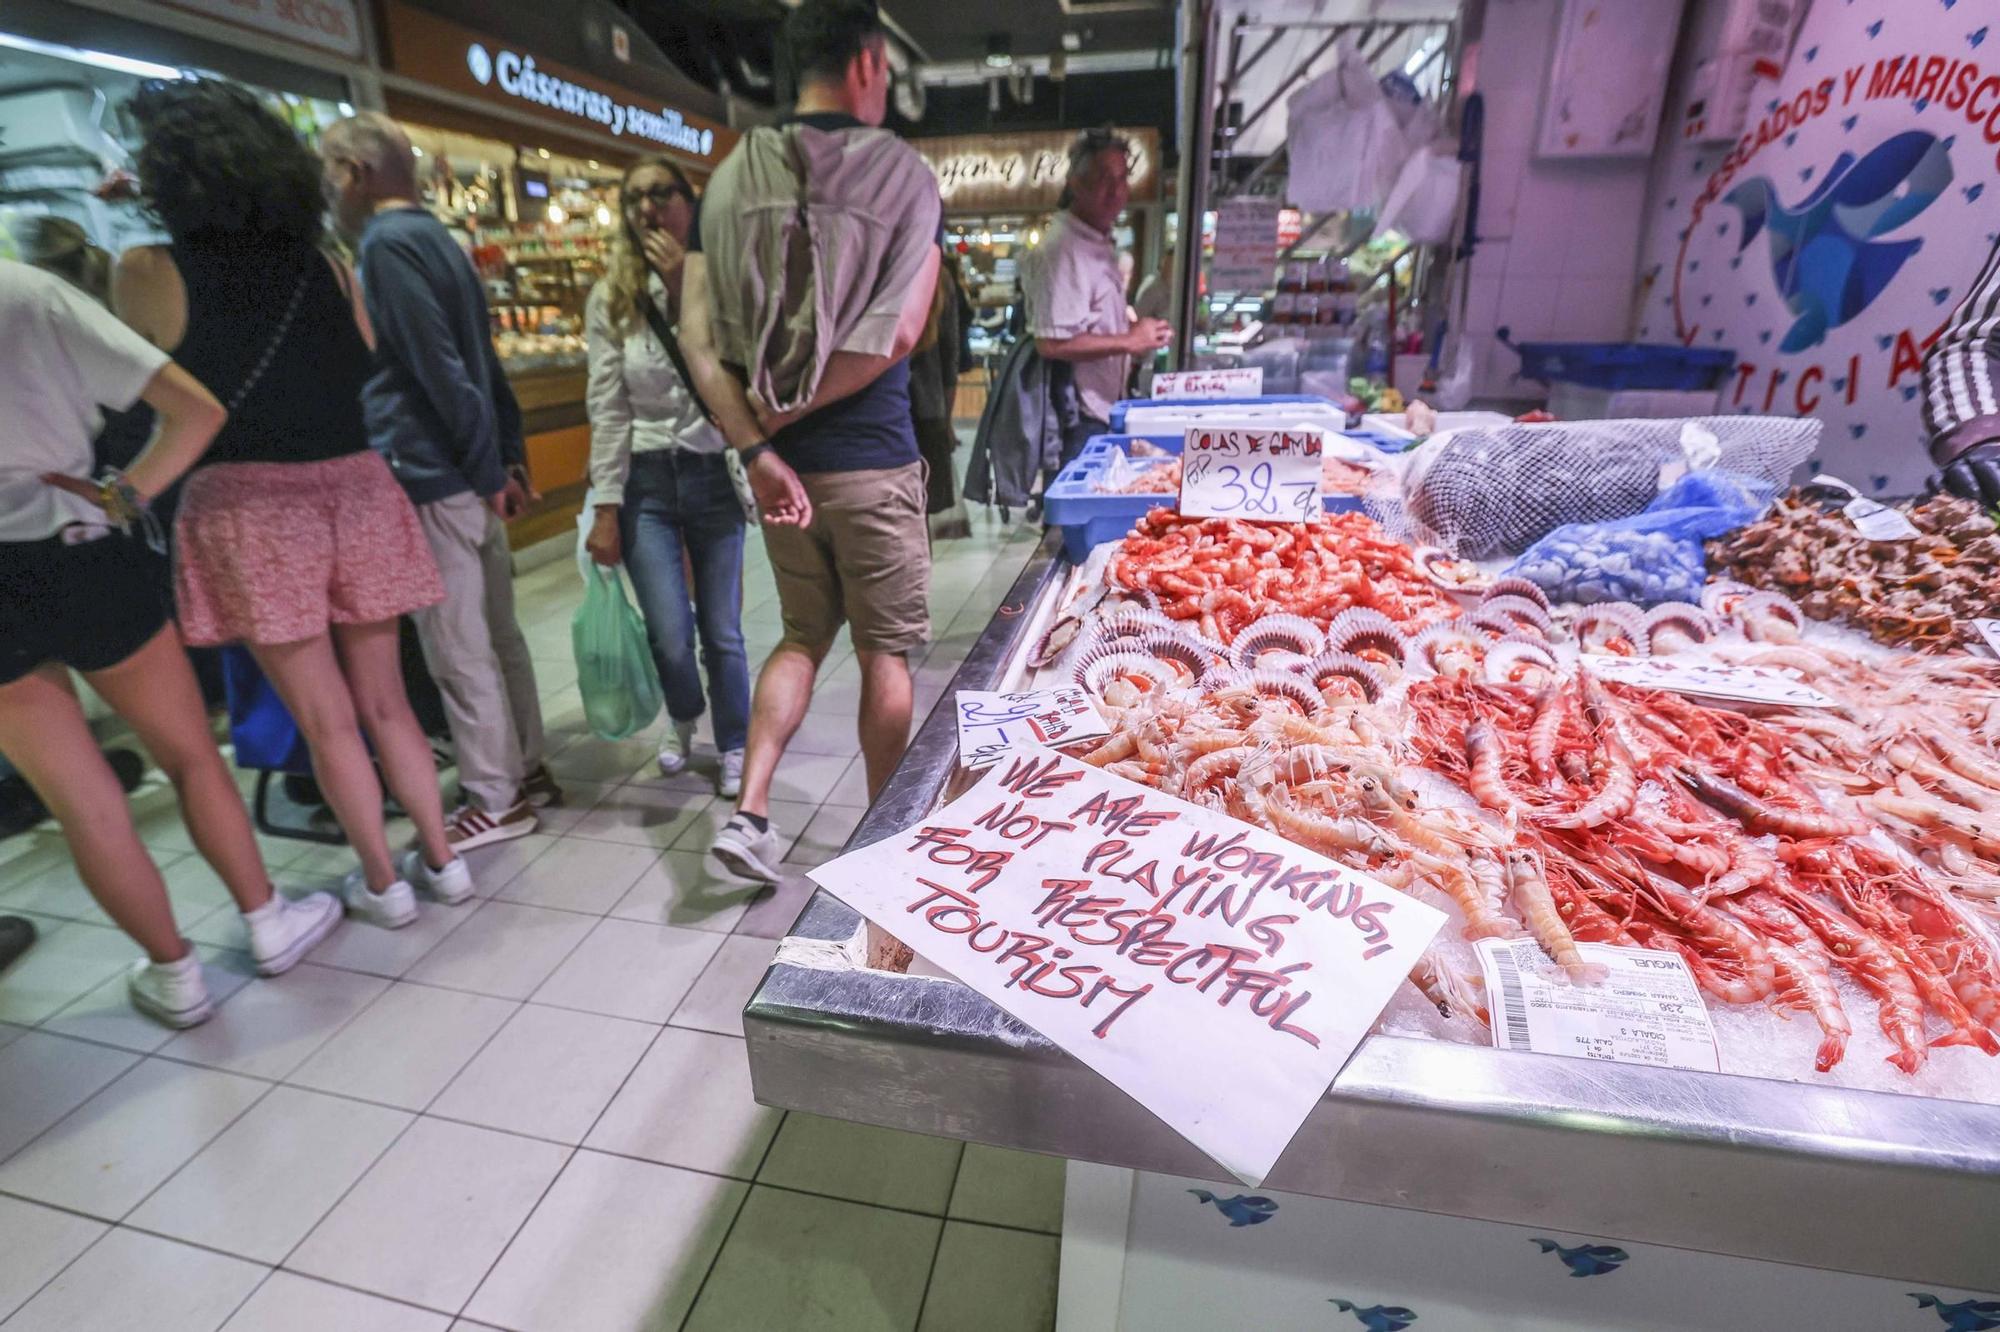 Los comerciantes del Mercado Central de Alicante quieren regular el turismo para asegurar una convivencia armoniosa con sus clientes tradicionales.